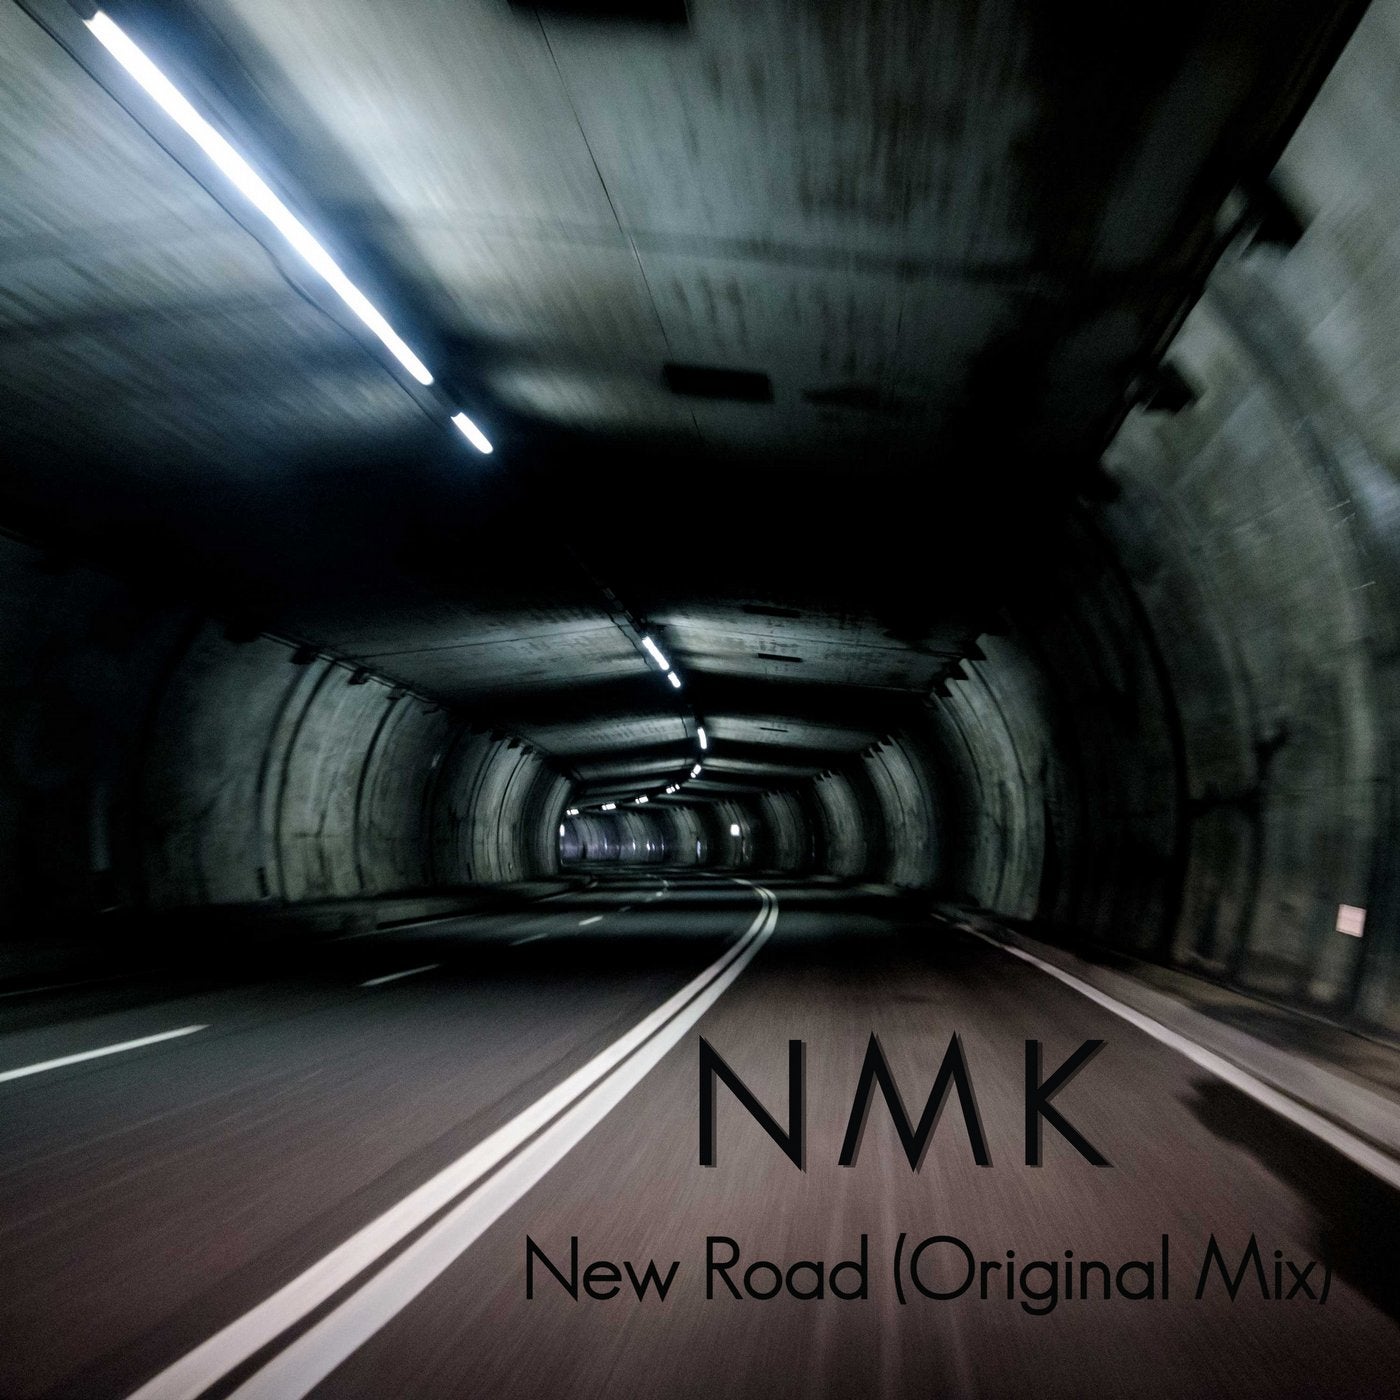 New Road (Original Mix)